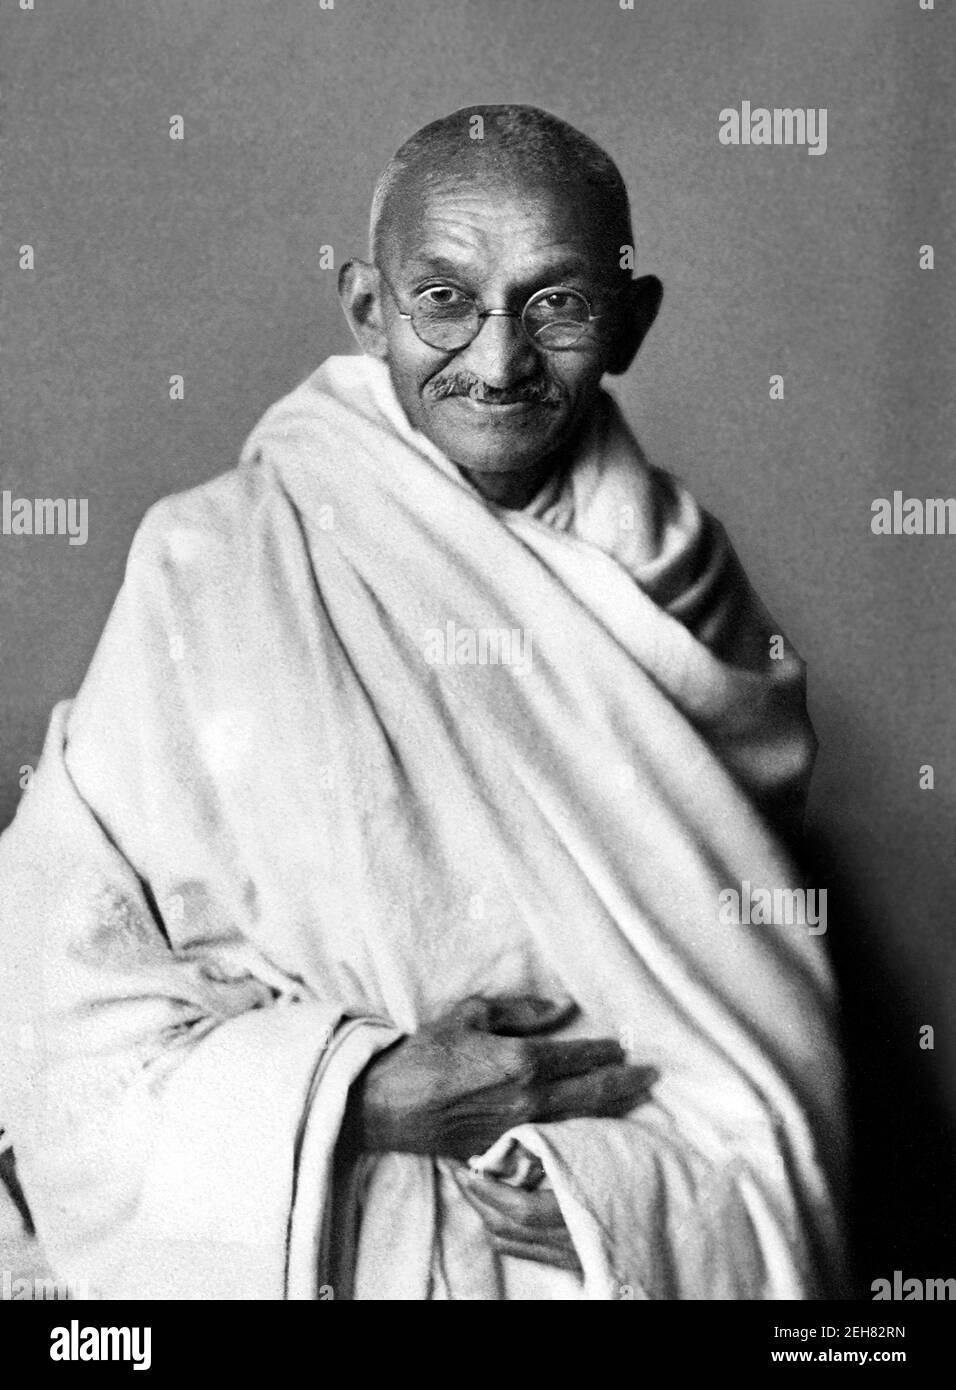 Mahatma Gandhi. Portrait de Mohandas Karamchand Gandhi (1869-1948), connu sous le nom de Mahatma Gandhi. Photo prise en 1931 Banque D'Images